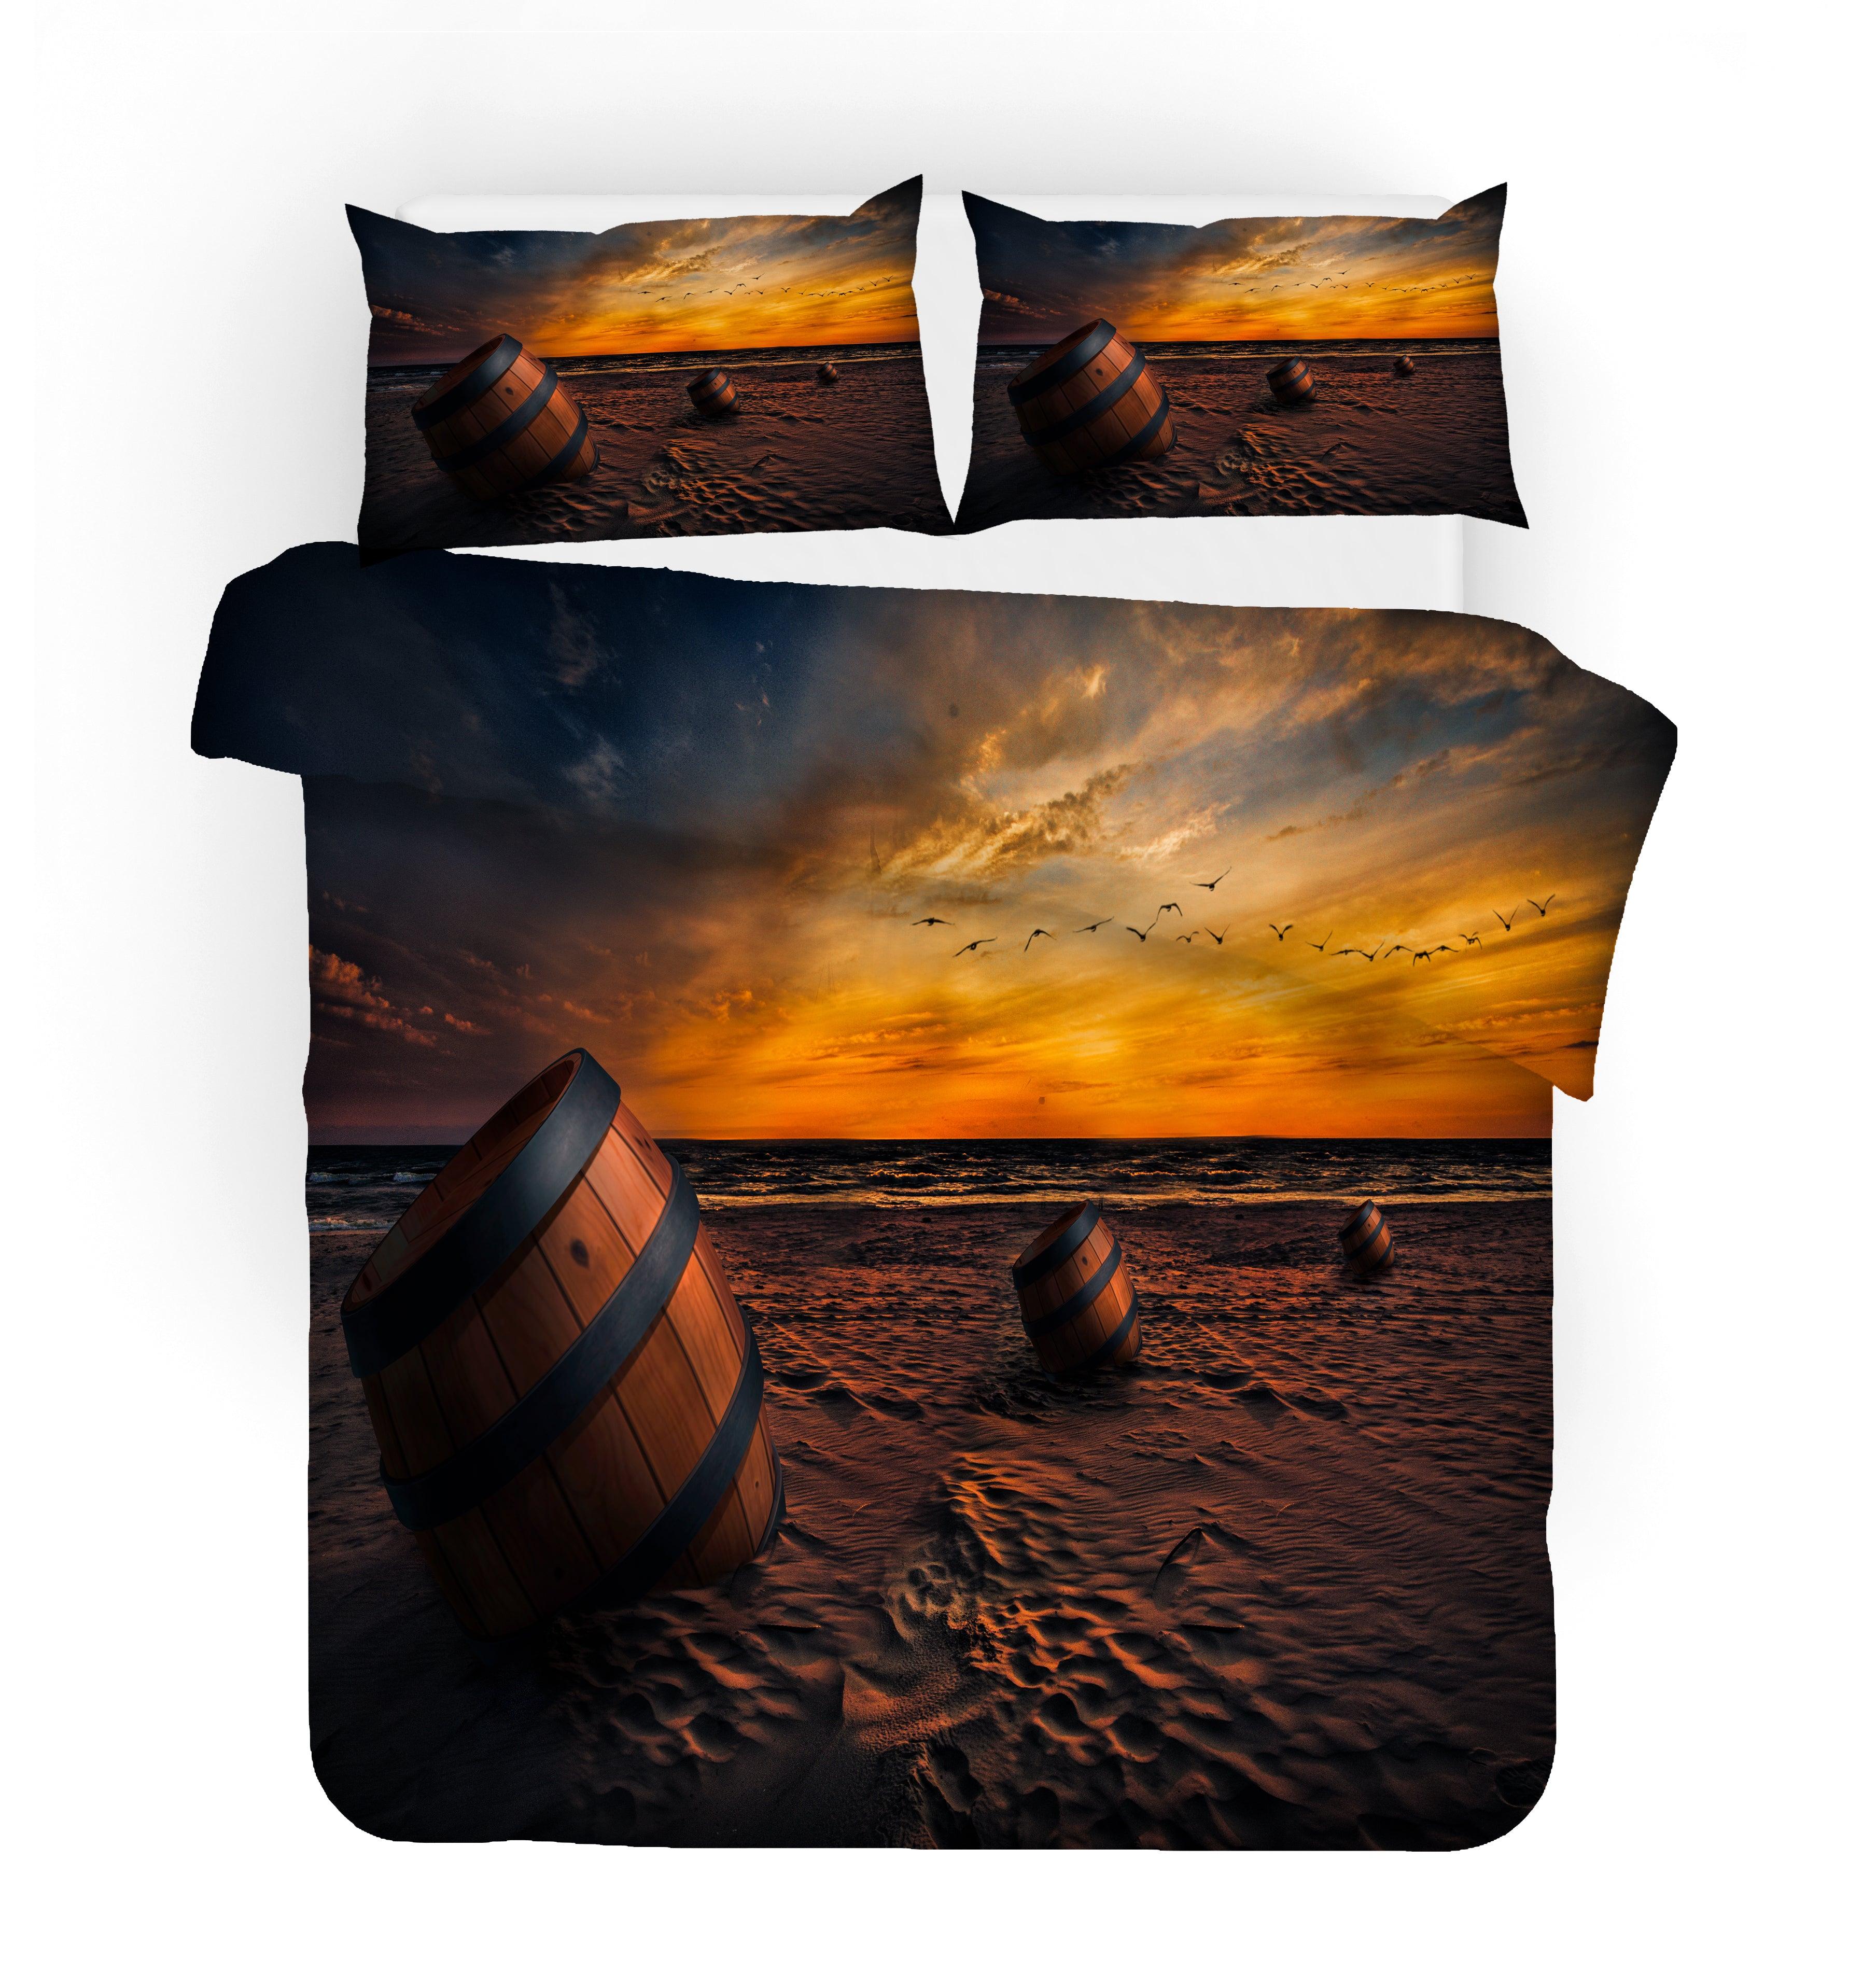 3D Sunset Beach Wooden Barrel Quilt Cover Set Bedding Set Pillowcases 79- Jess Art Decoration